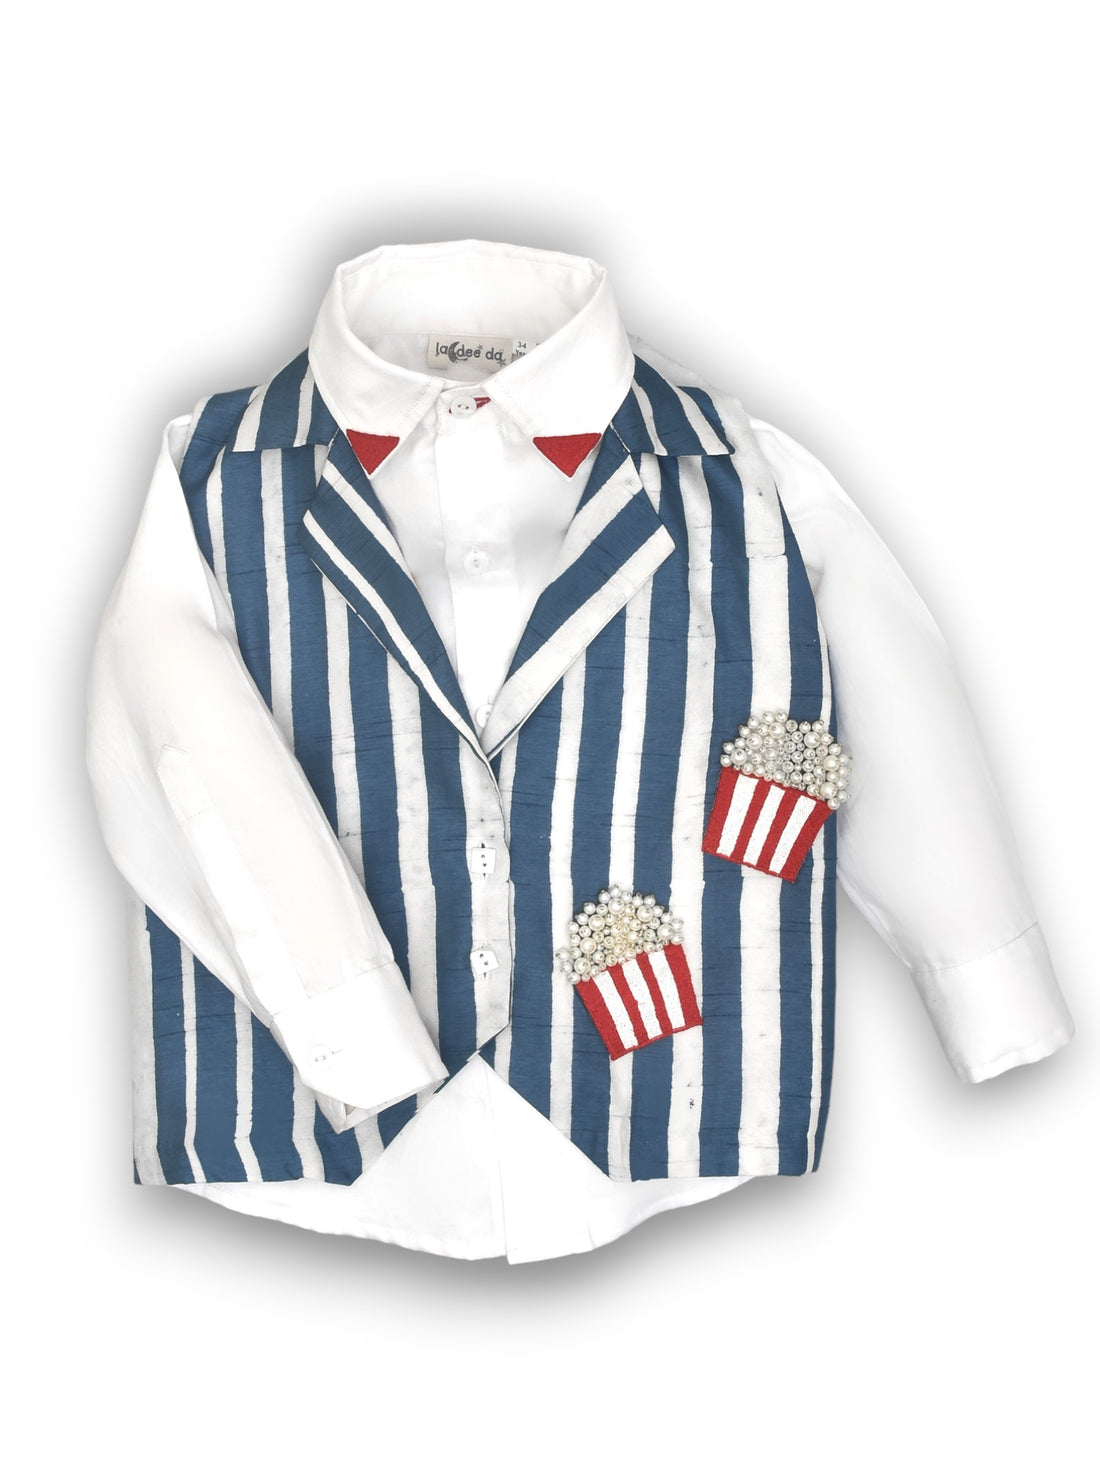 Classic White Shirt & Playful Sleeveless Popcorn Jacket Set